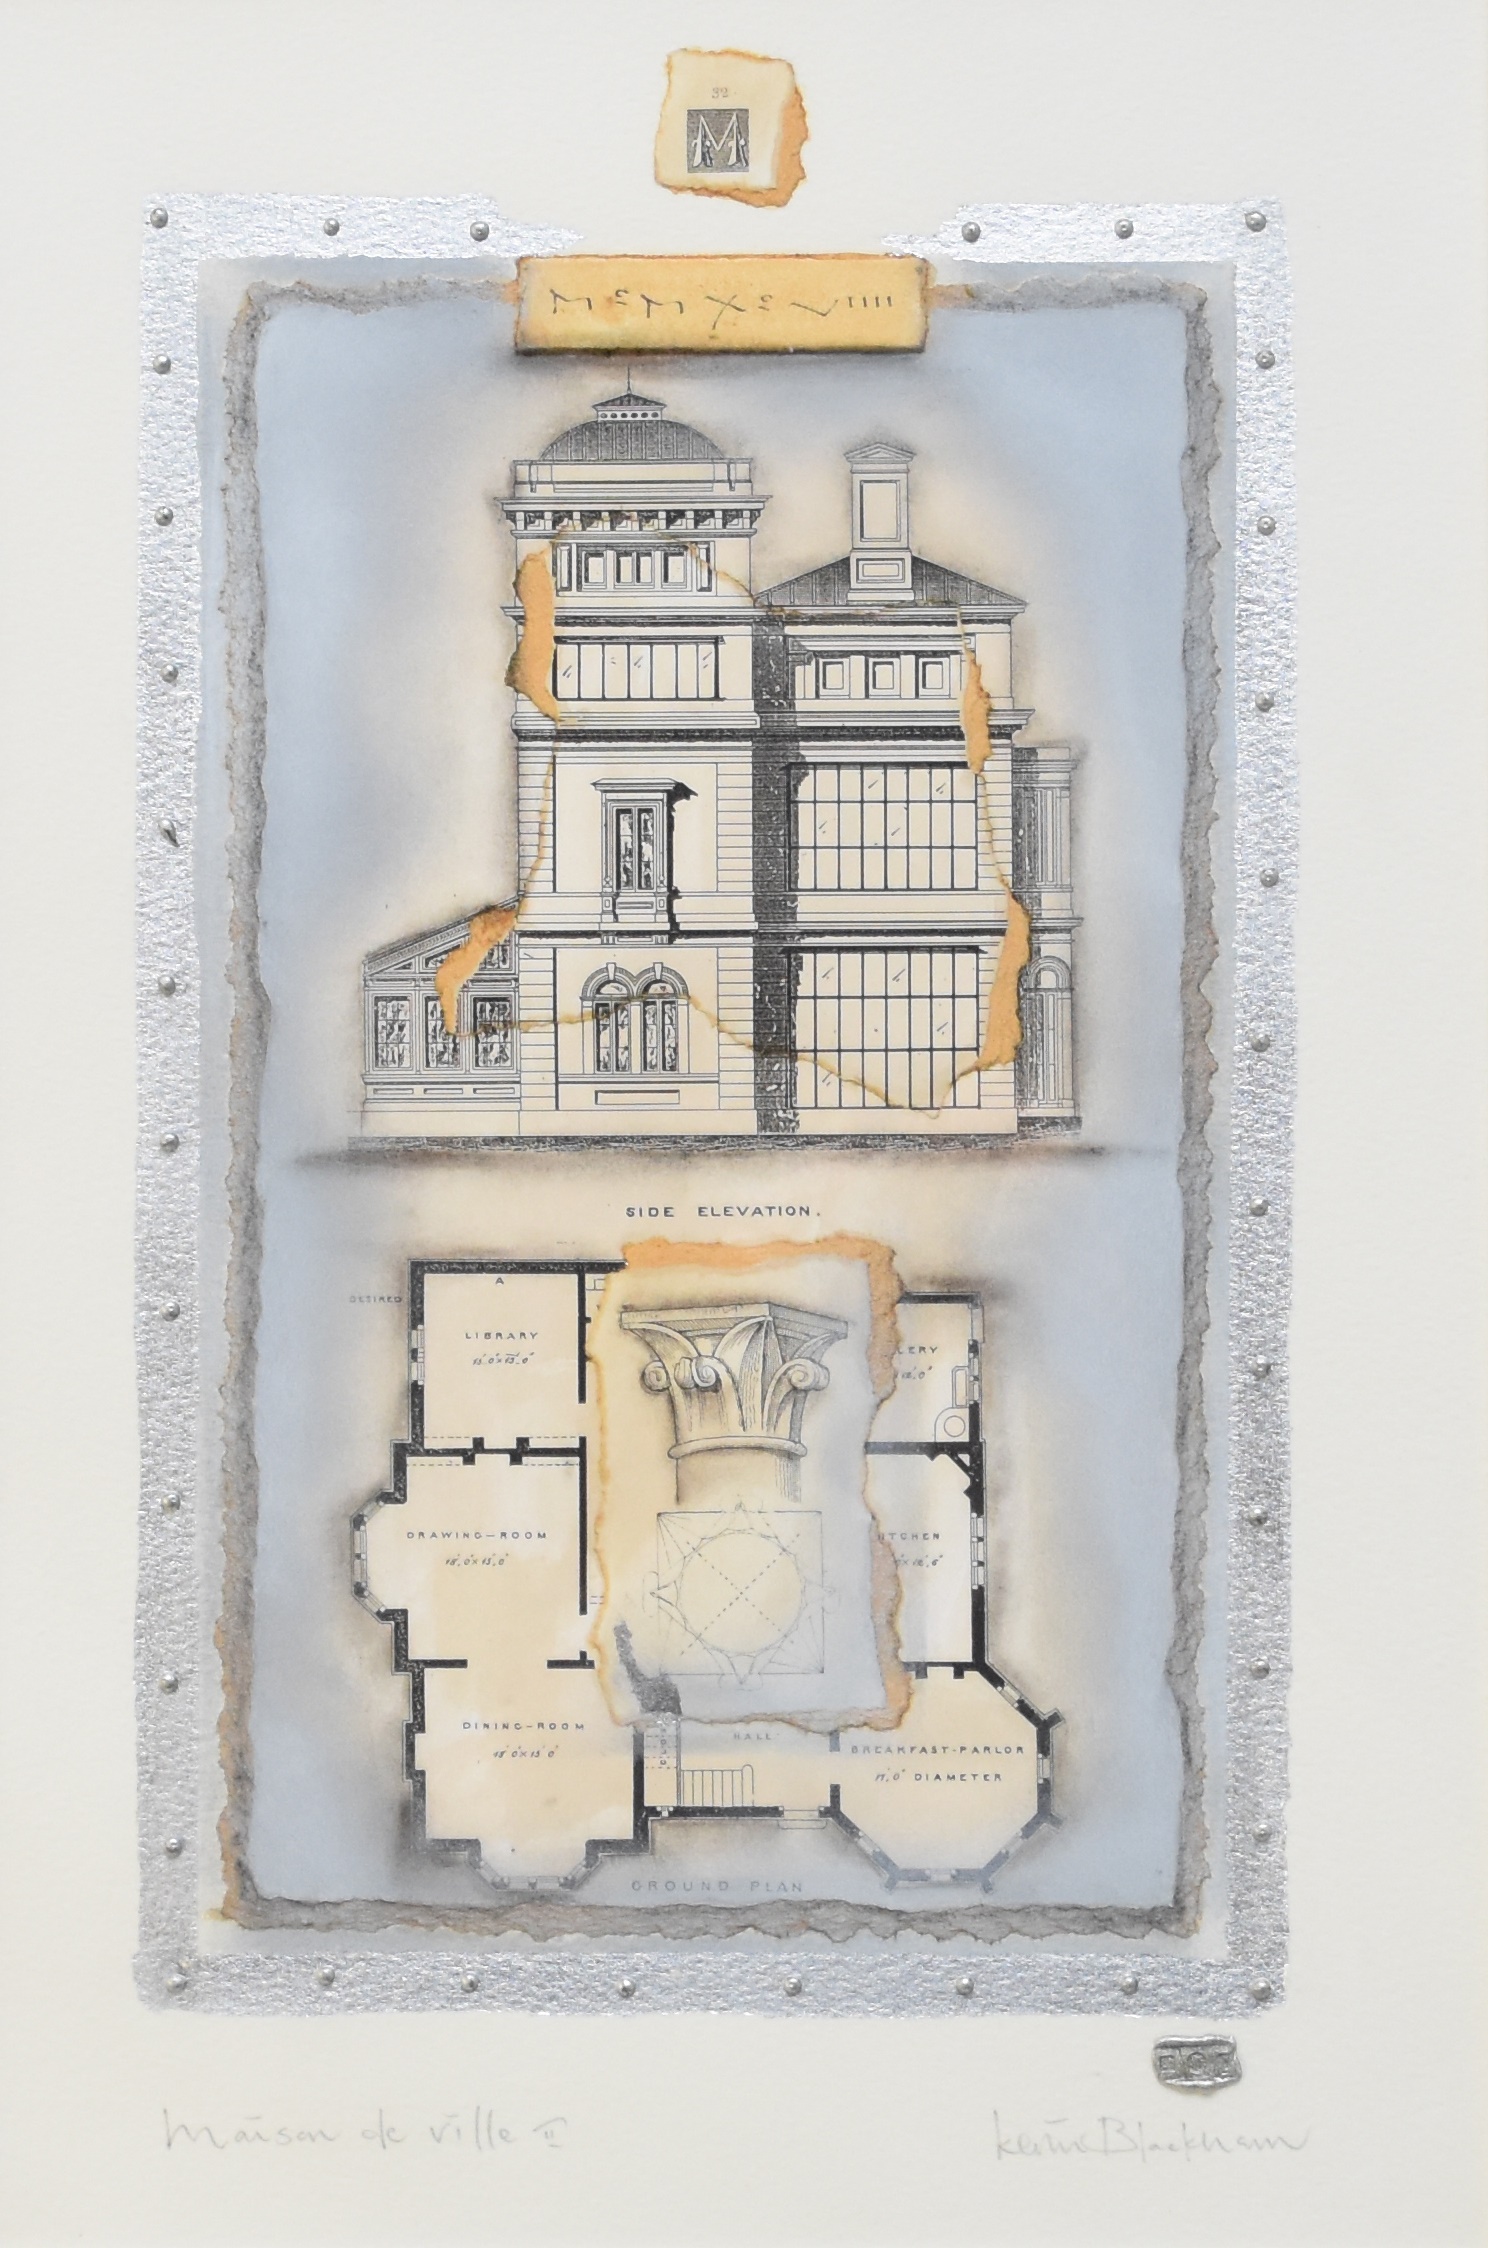 Kevin Blackham (British 20th Century) Maison de Ville, signed lower right, measurements 43 x 25